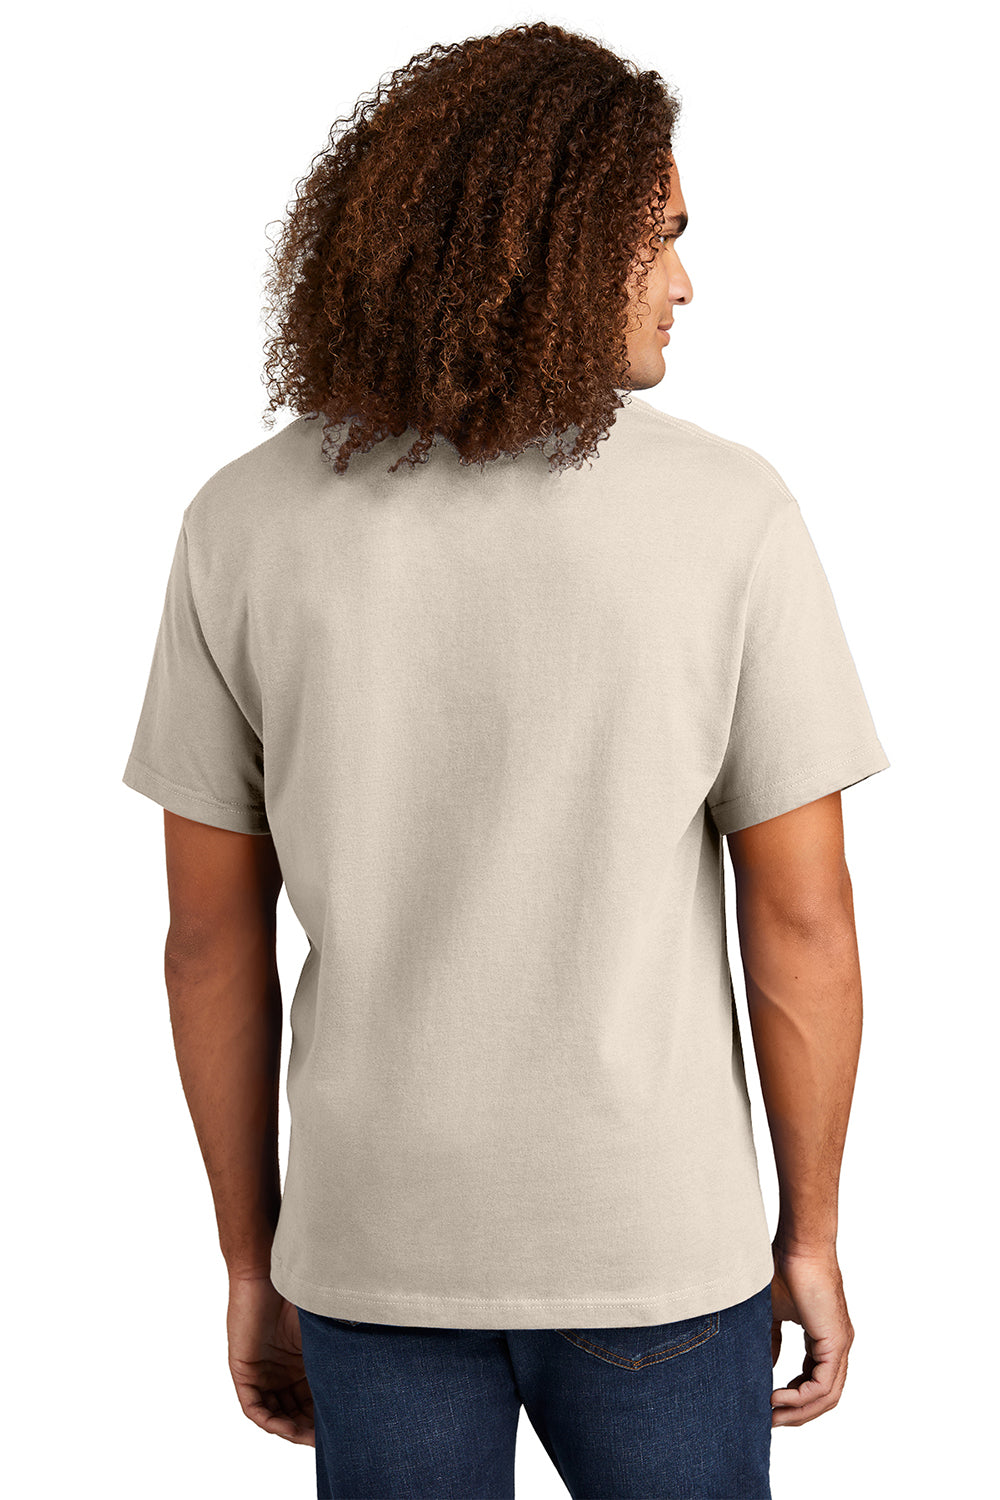 American Apparel 1301/AL1301 Mens Short Sleeve Crewneck T-Shirt Cream Model Back